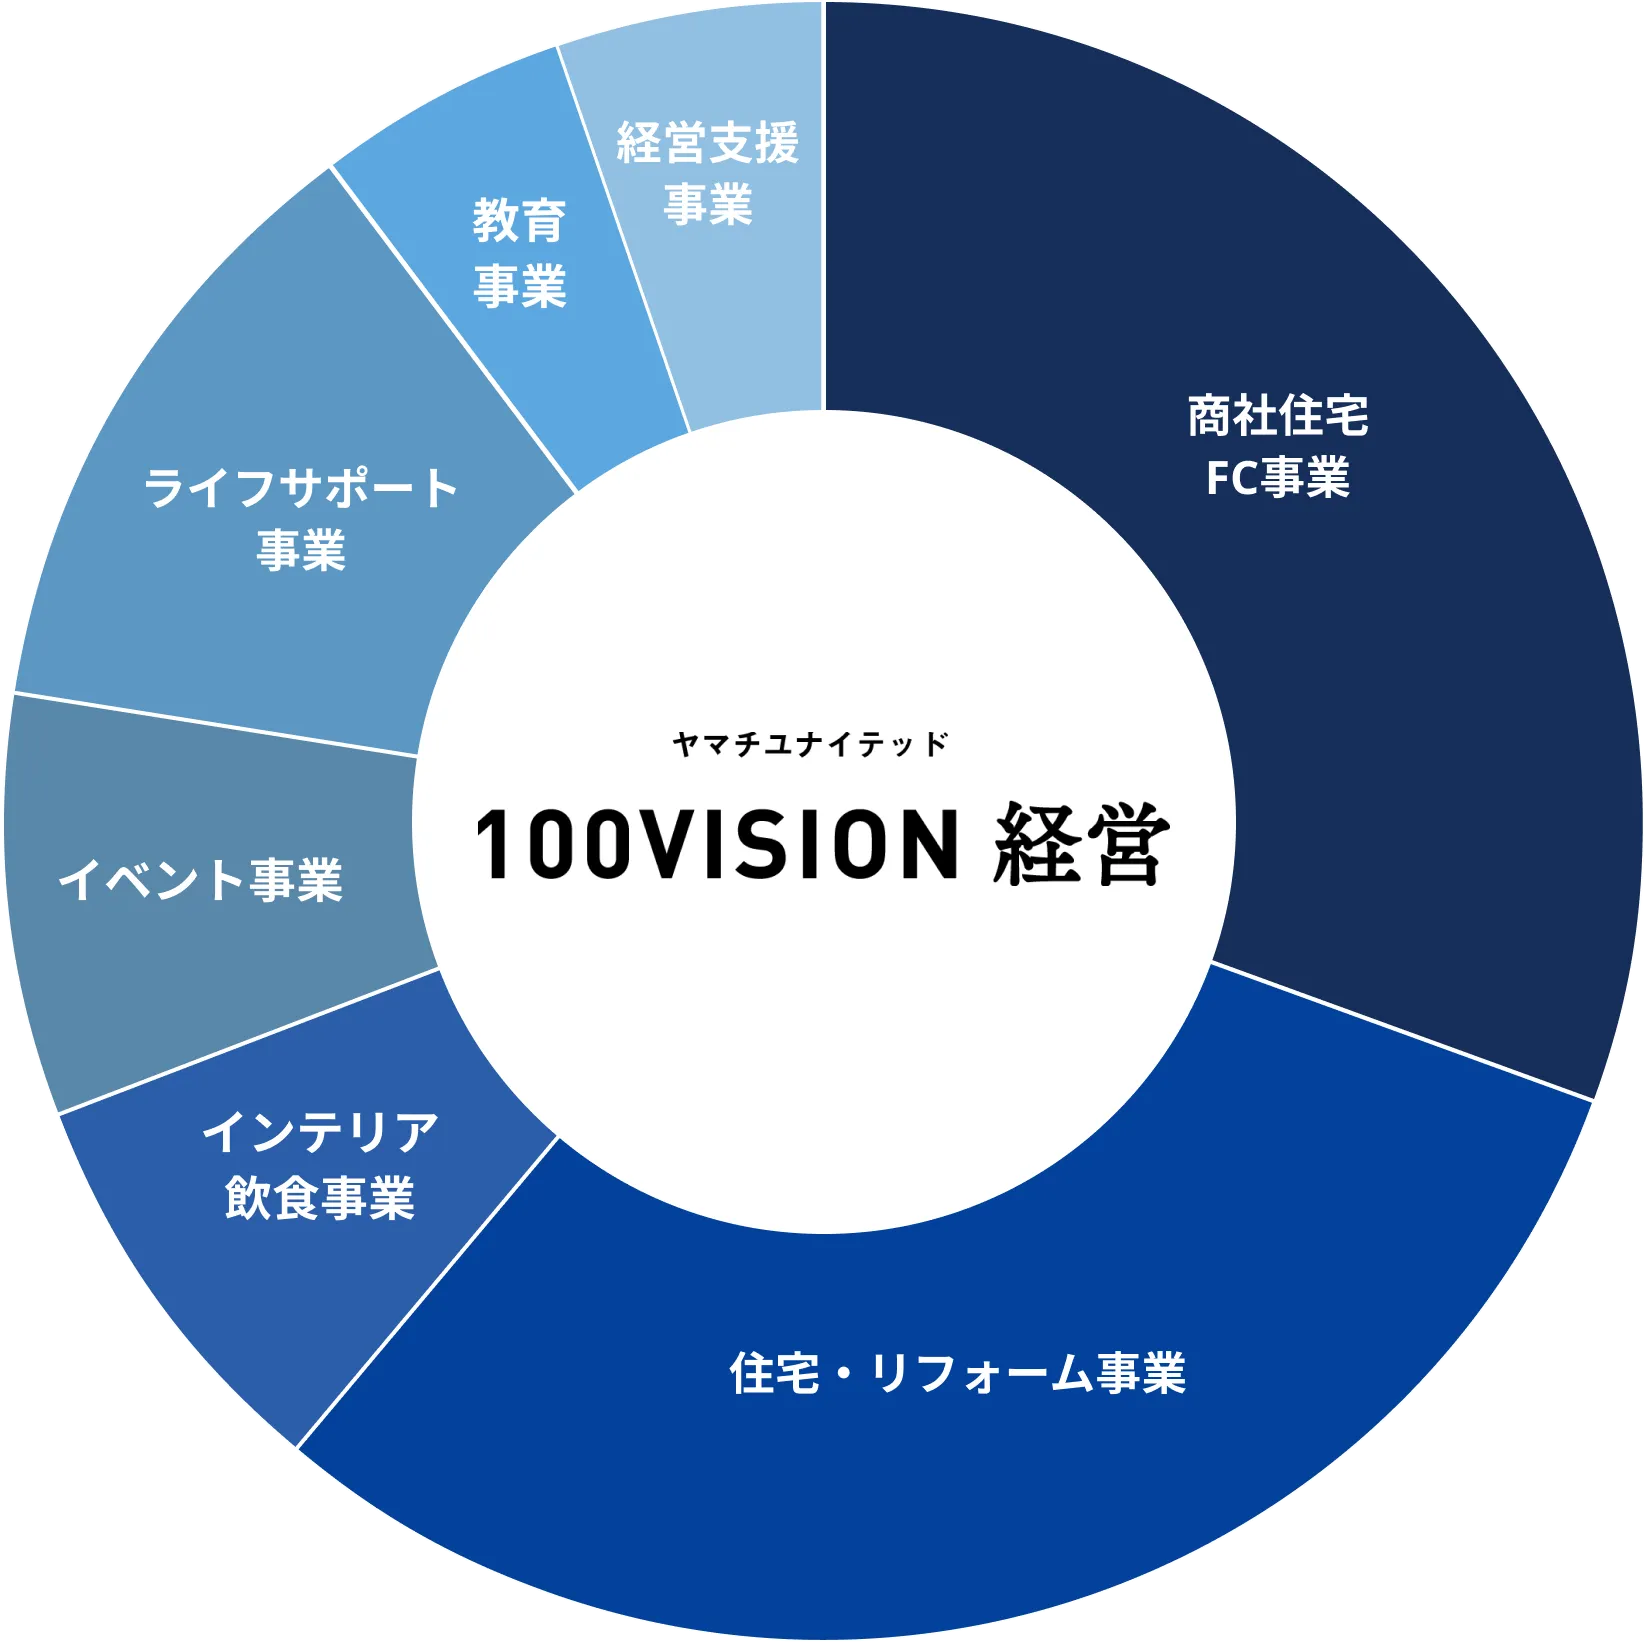 ヤマチユナイテッド100VISION経営の事業領域